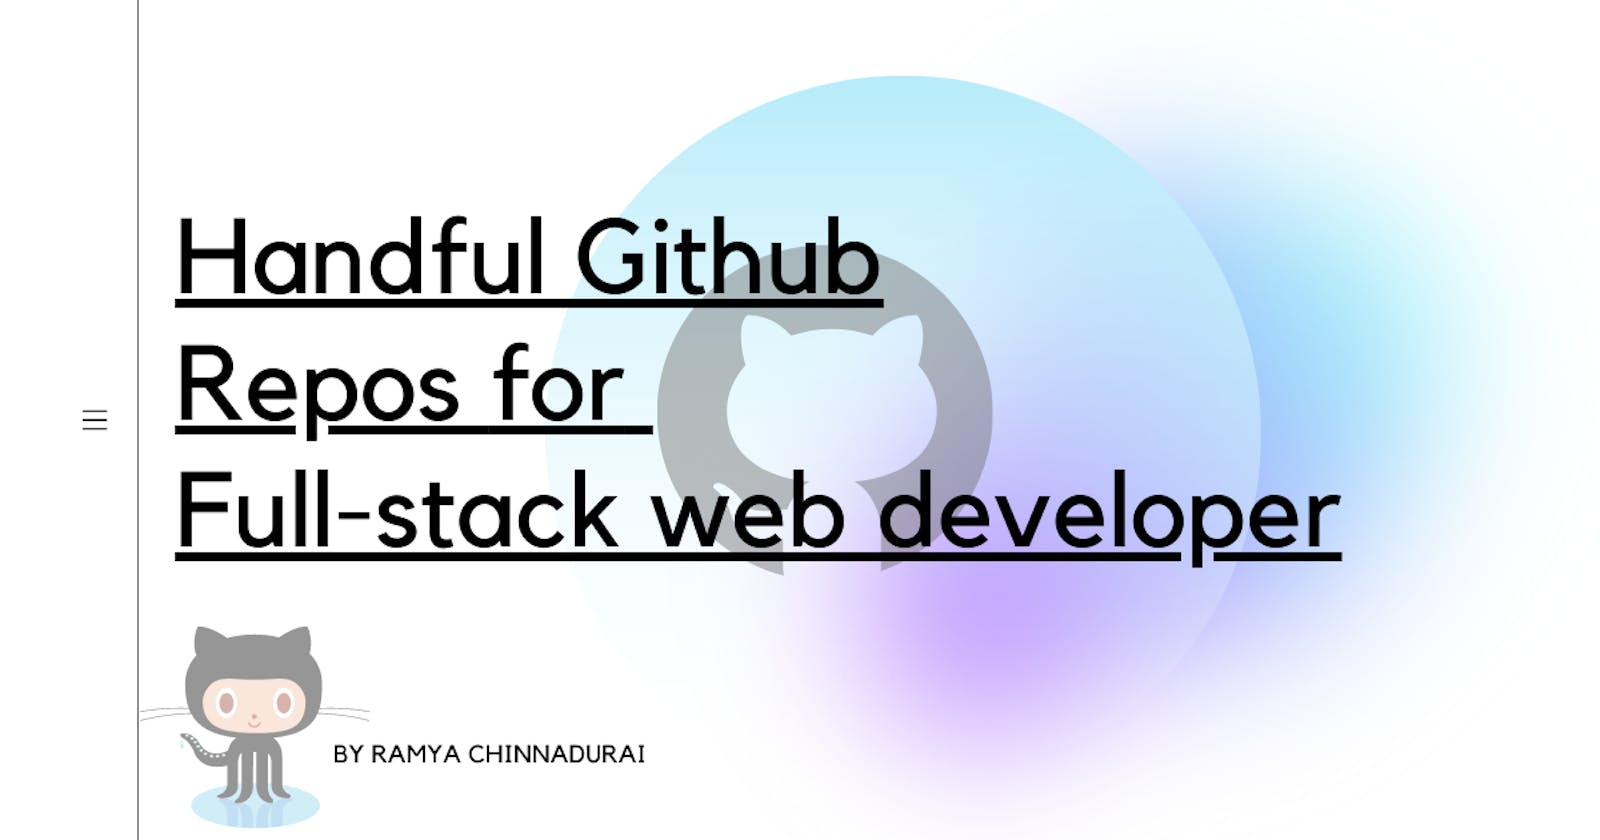 Handful Github Repos for Full stack web developer